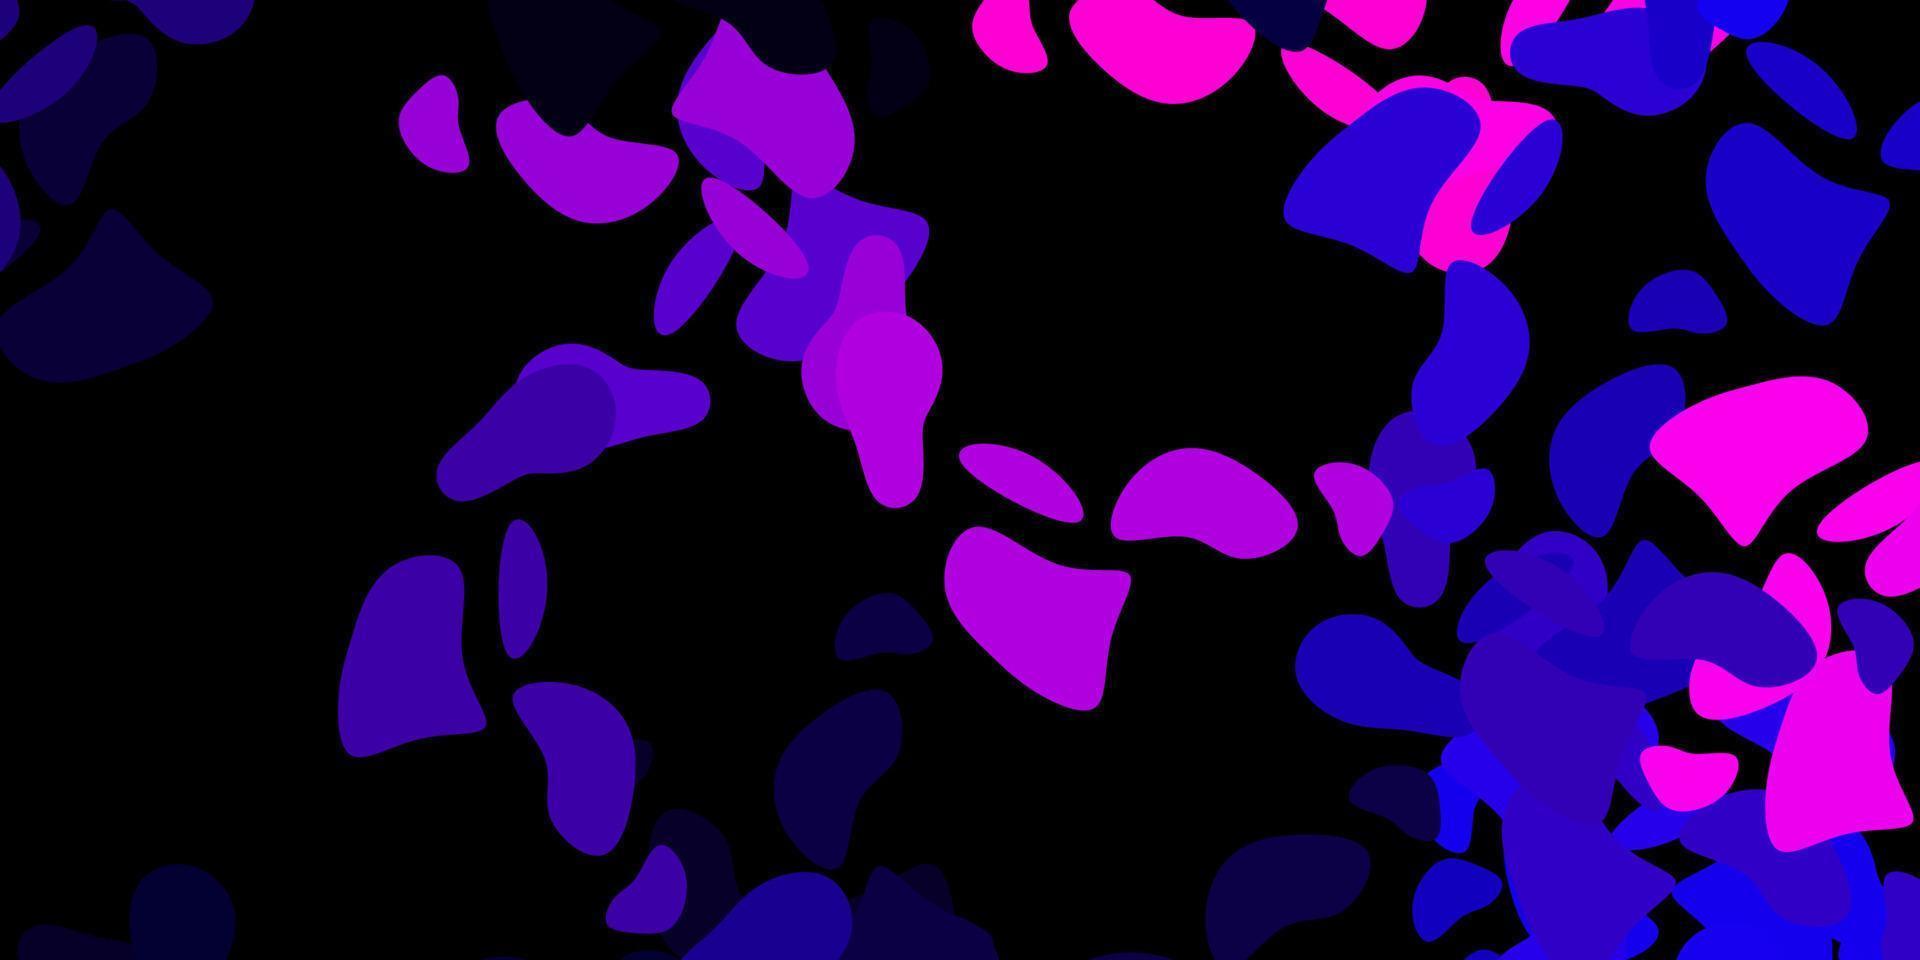 fond de vecteur violet foncé avec des formes aléatoires.